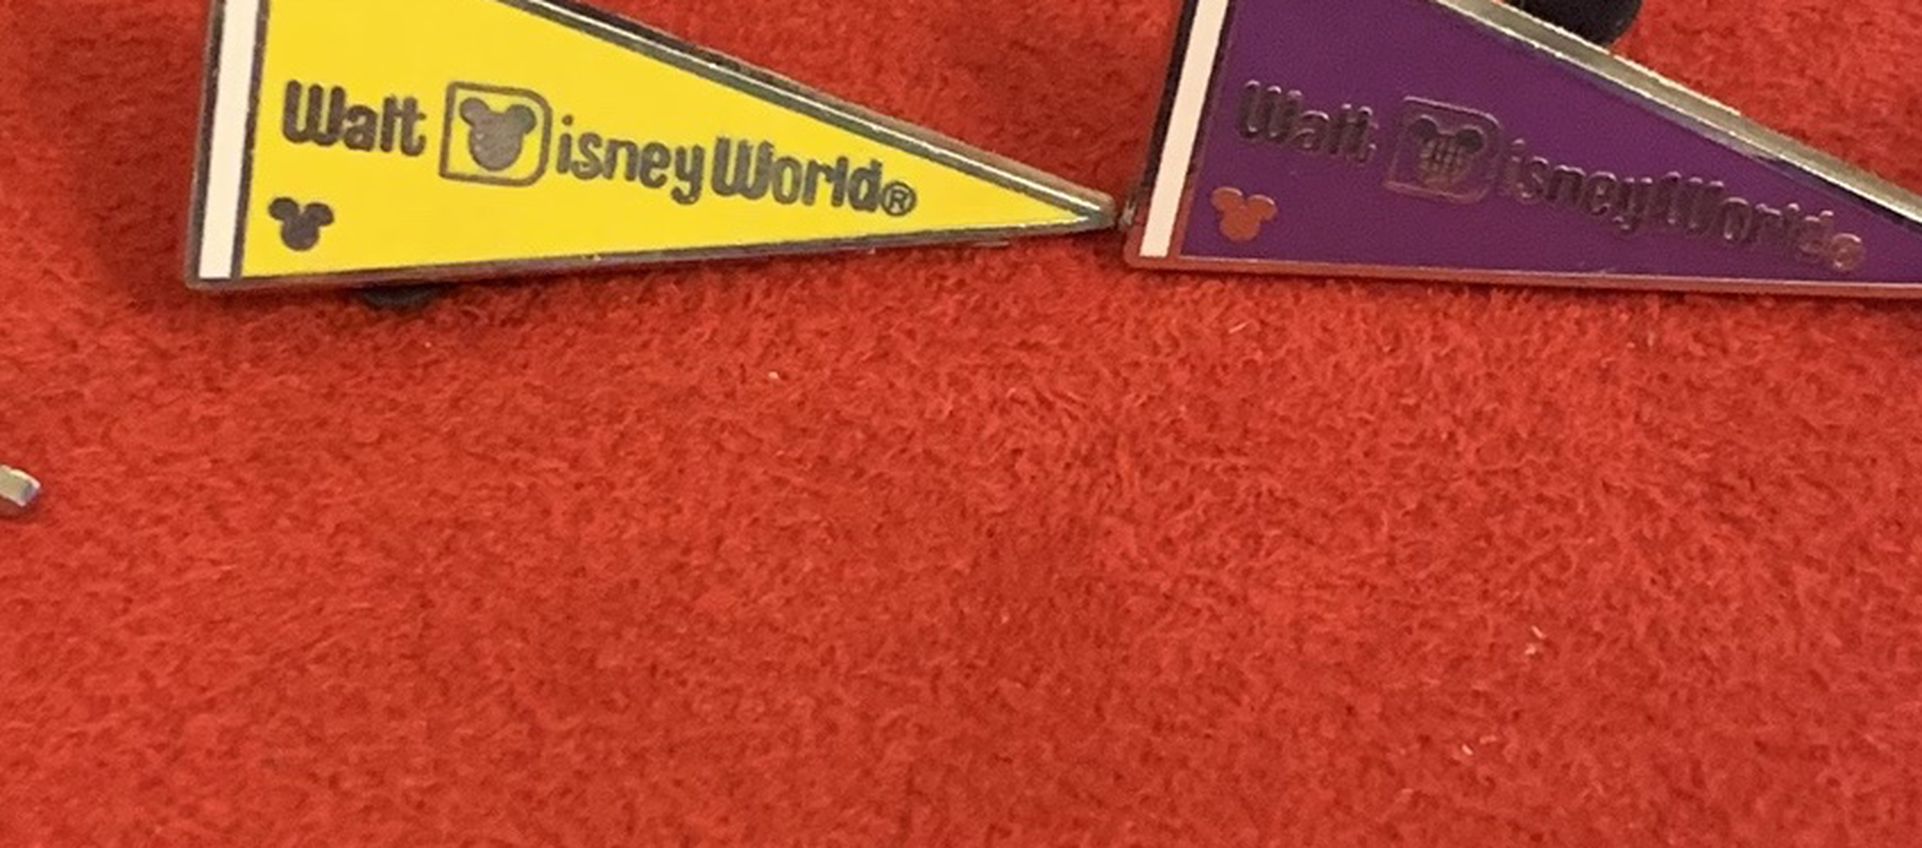 Disney Pins $5 Each